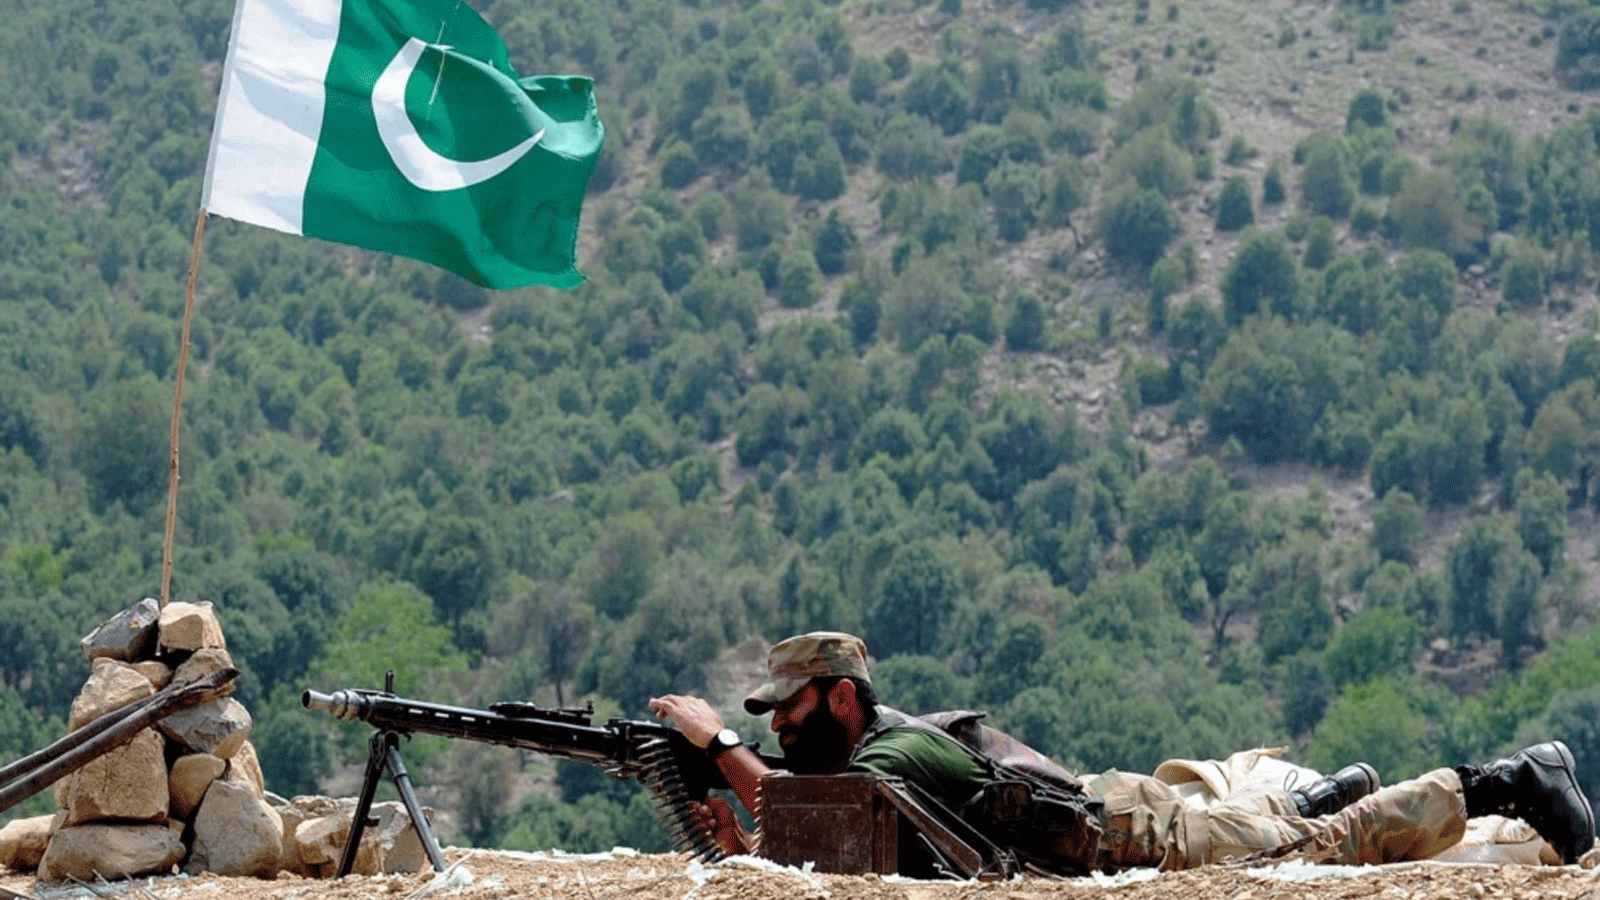 جندي باكستاني يتخذ موقعه في جبل ماناتو في الجزء الأوسط من وكالة كورام، الحزام القبلي الباكستاني المتاخم لأفغانستان، خلال عملية ضد المسلحين. 10 تموز\يوليو 2011